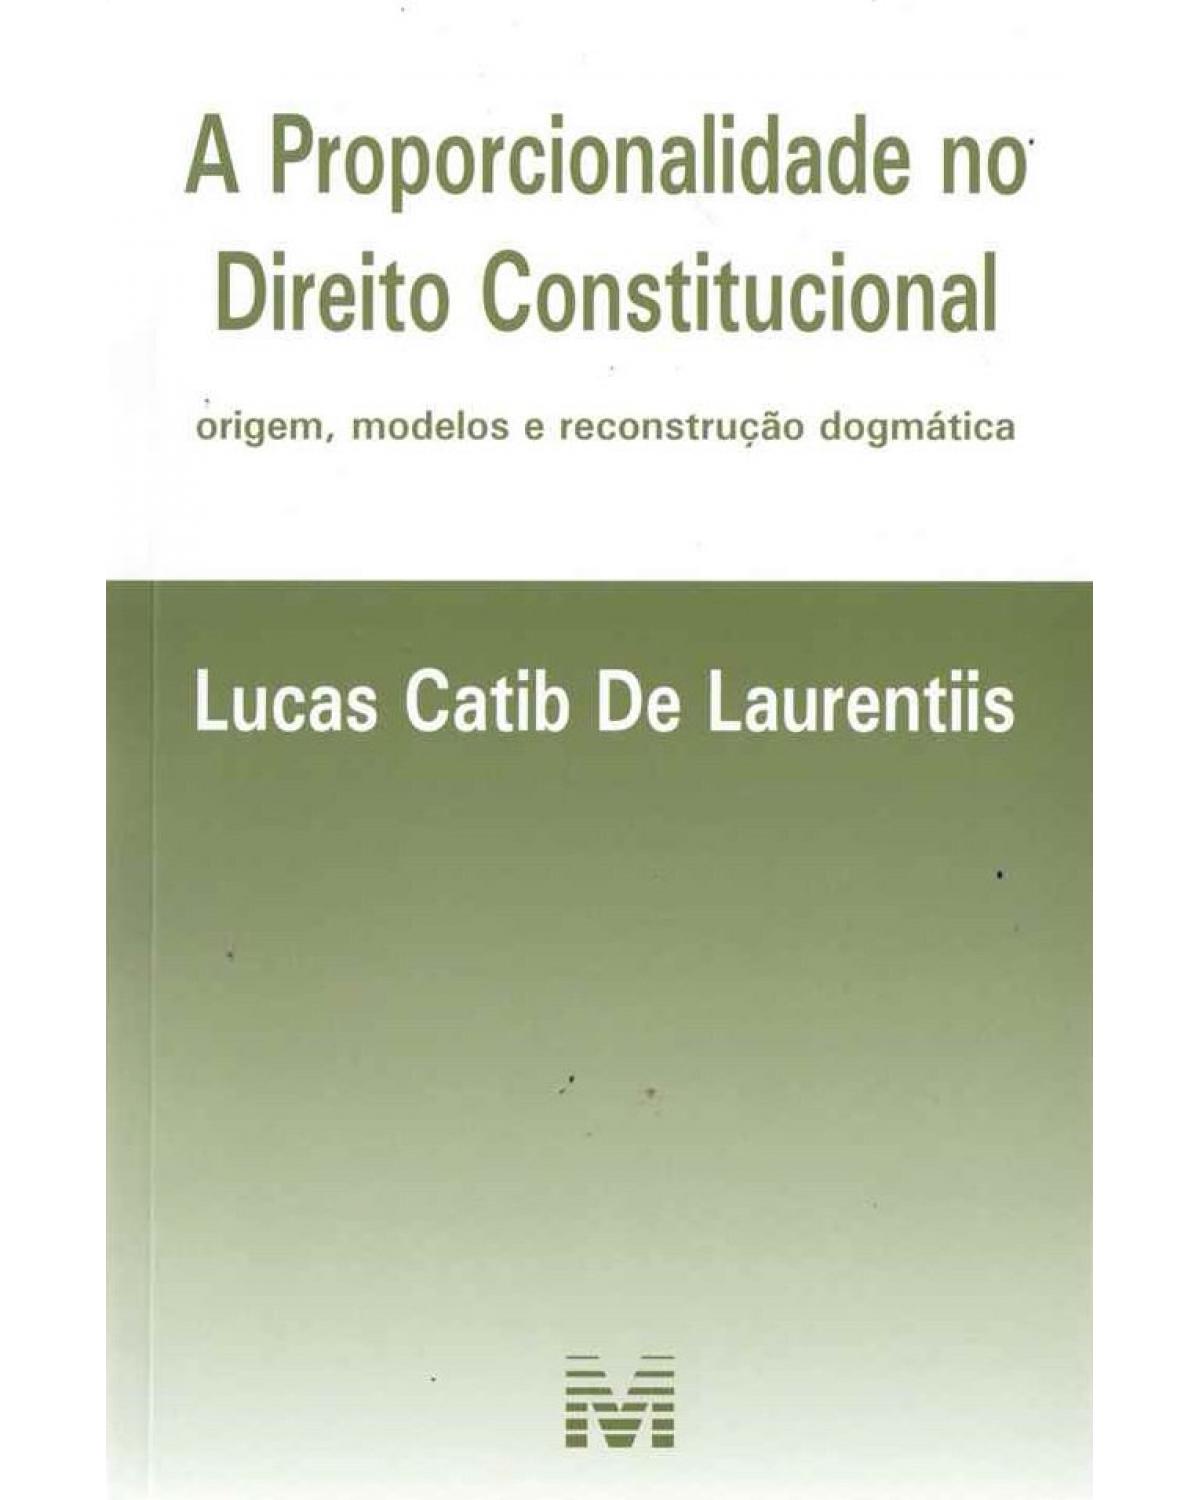 A proporcionalidade no direito constitucional: Origem, modelos e reconstrução dogmática - 1ª Edição